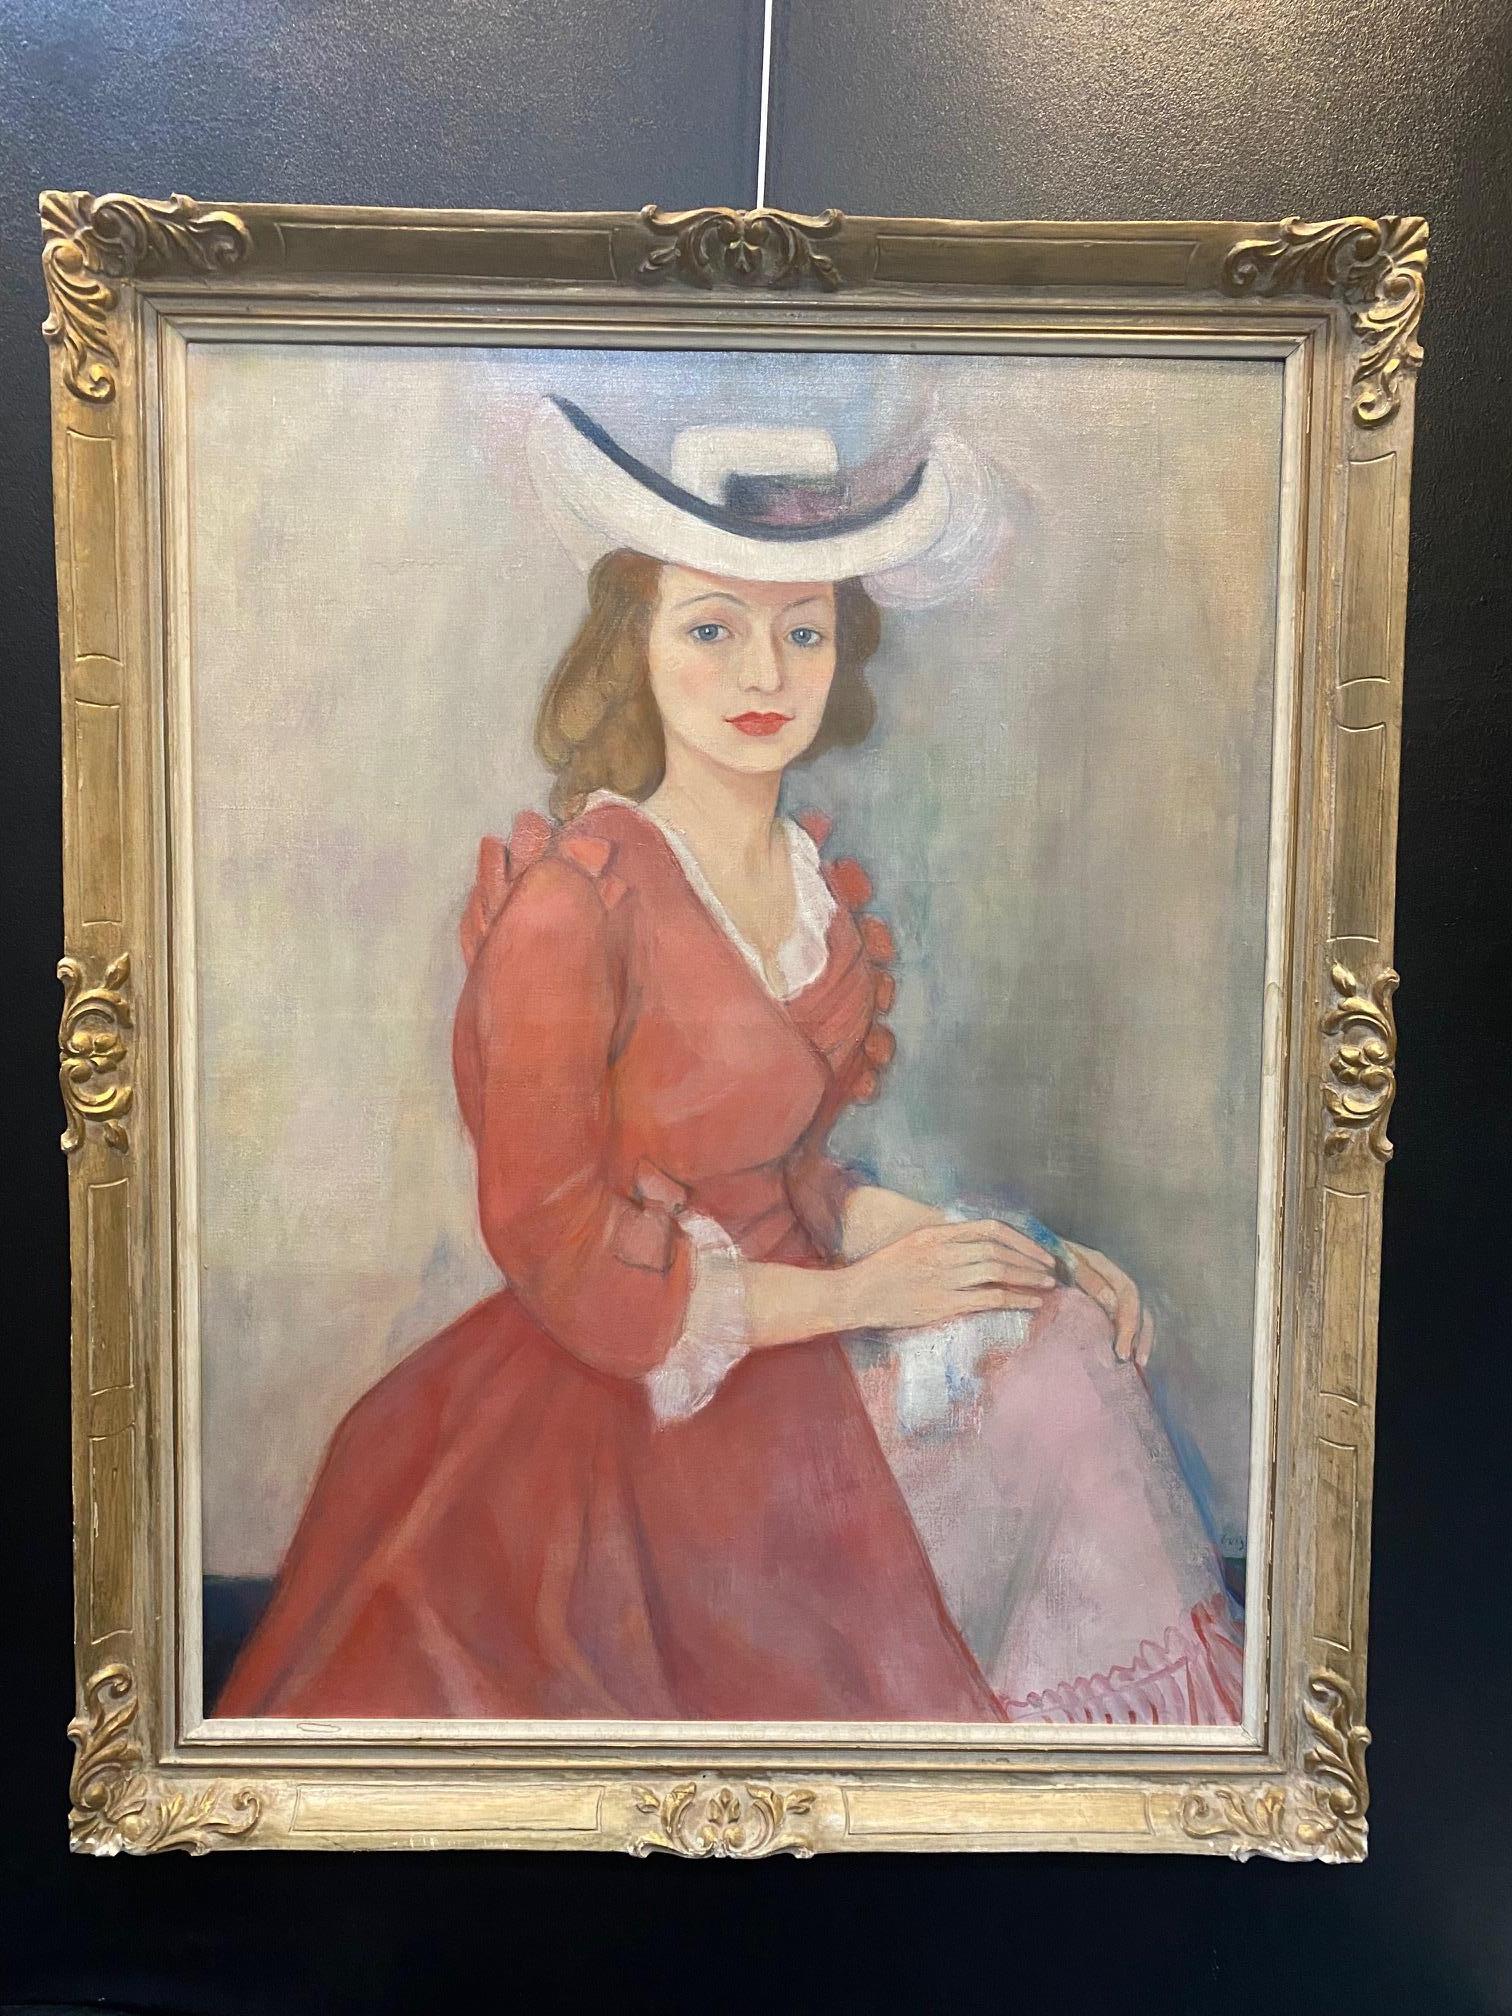 Woman portrait by Ilse Voigt - Oil on canvas 96x76 cm For Sale 2